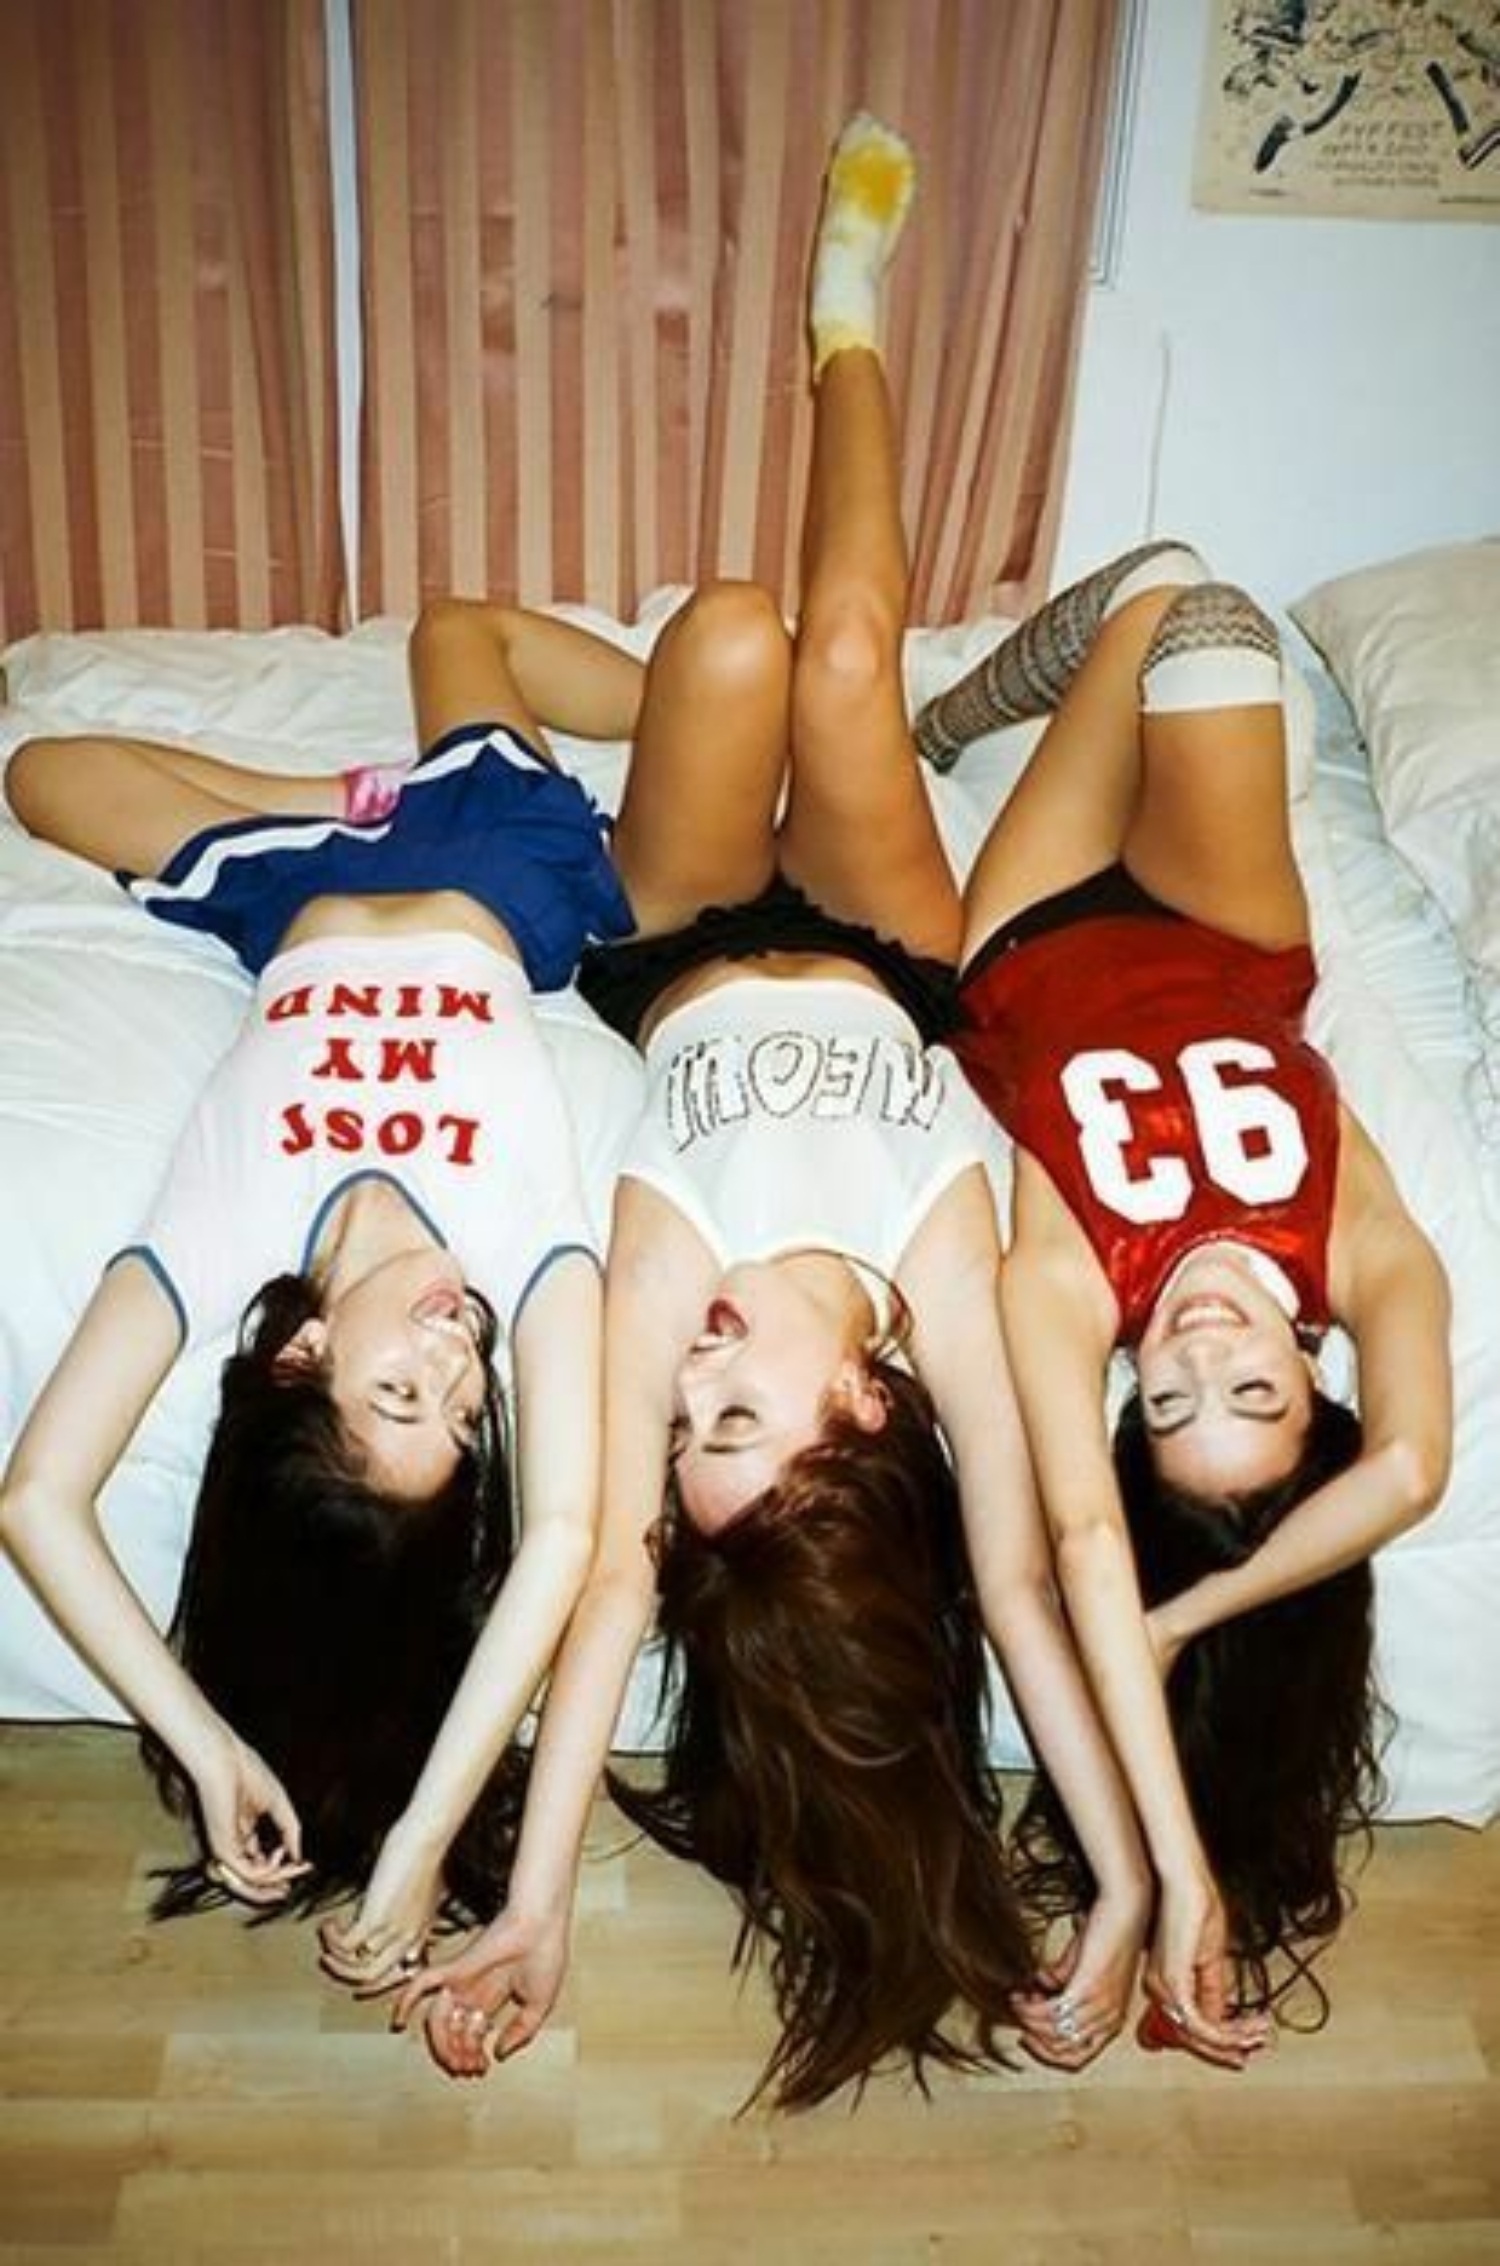 Караоке вечеринка трёх подружек - порно фото